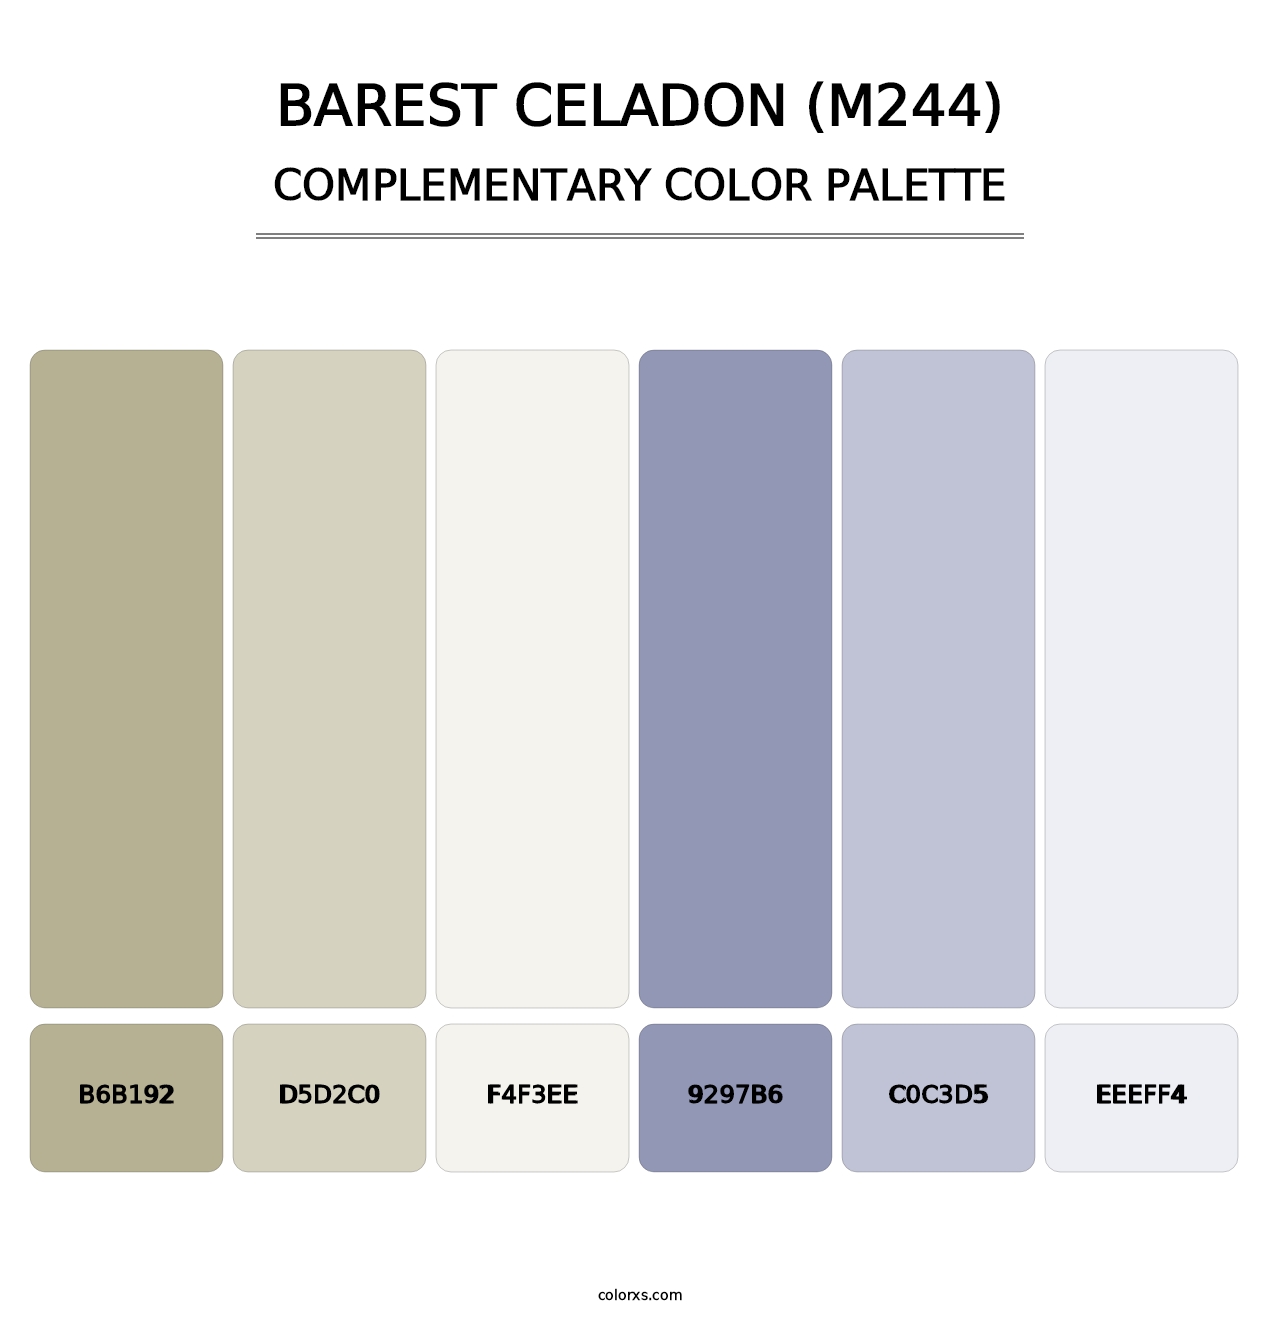 Barest Celadon (M244) - Complementary Color Palette